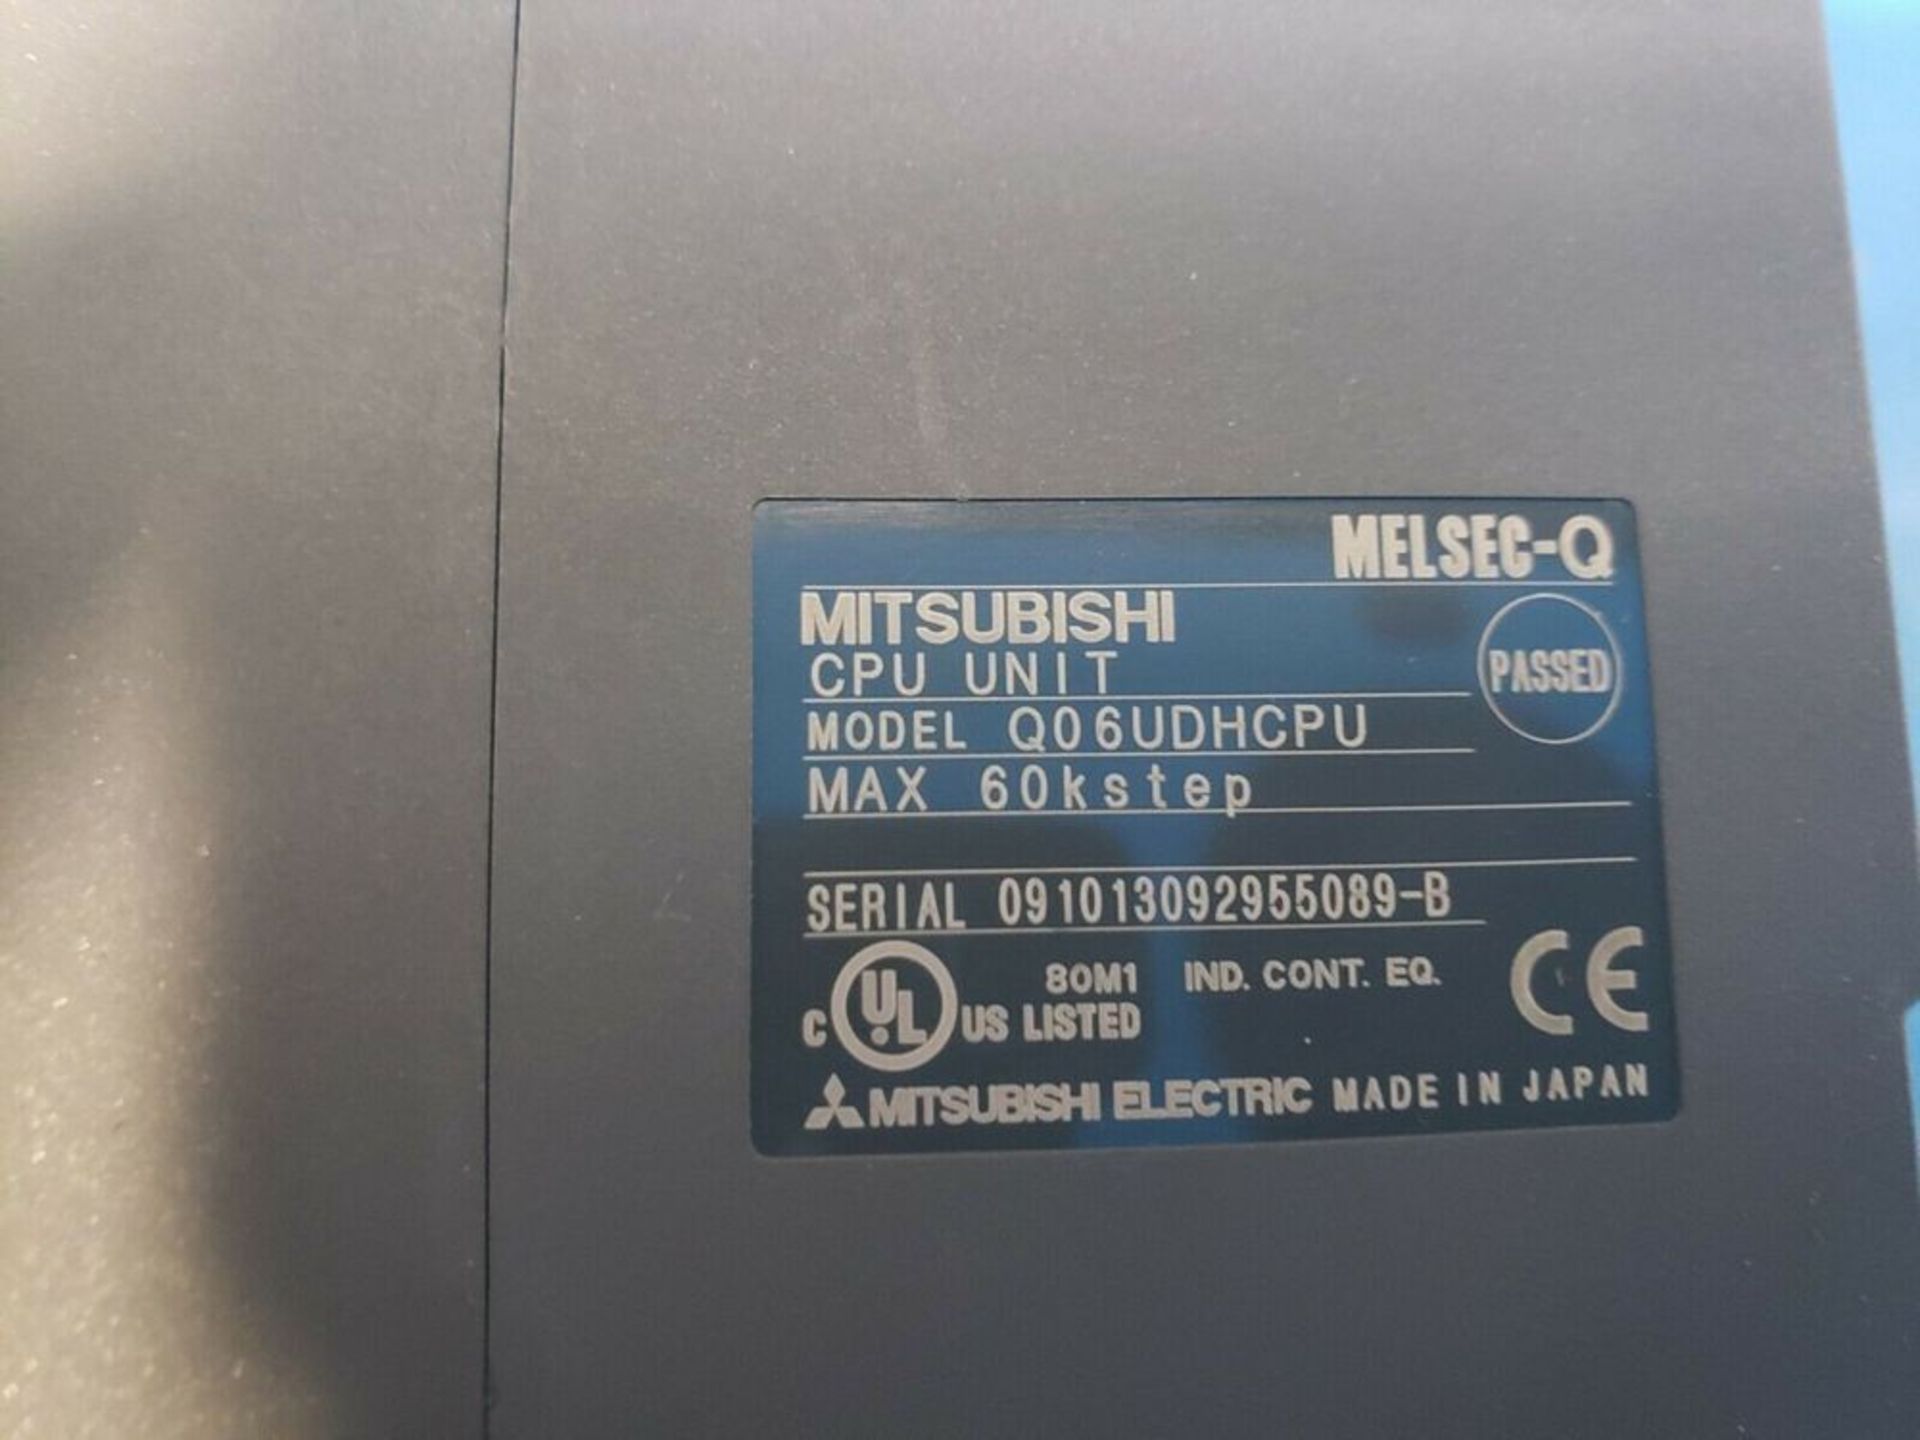 Mitsubishi Melsec-Q PLC CPU Processor Unit - Image 3 of 3